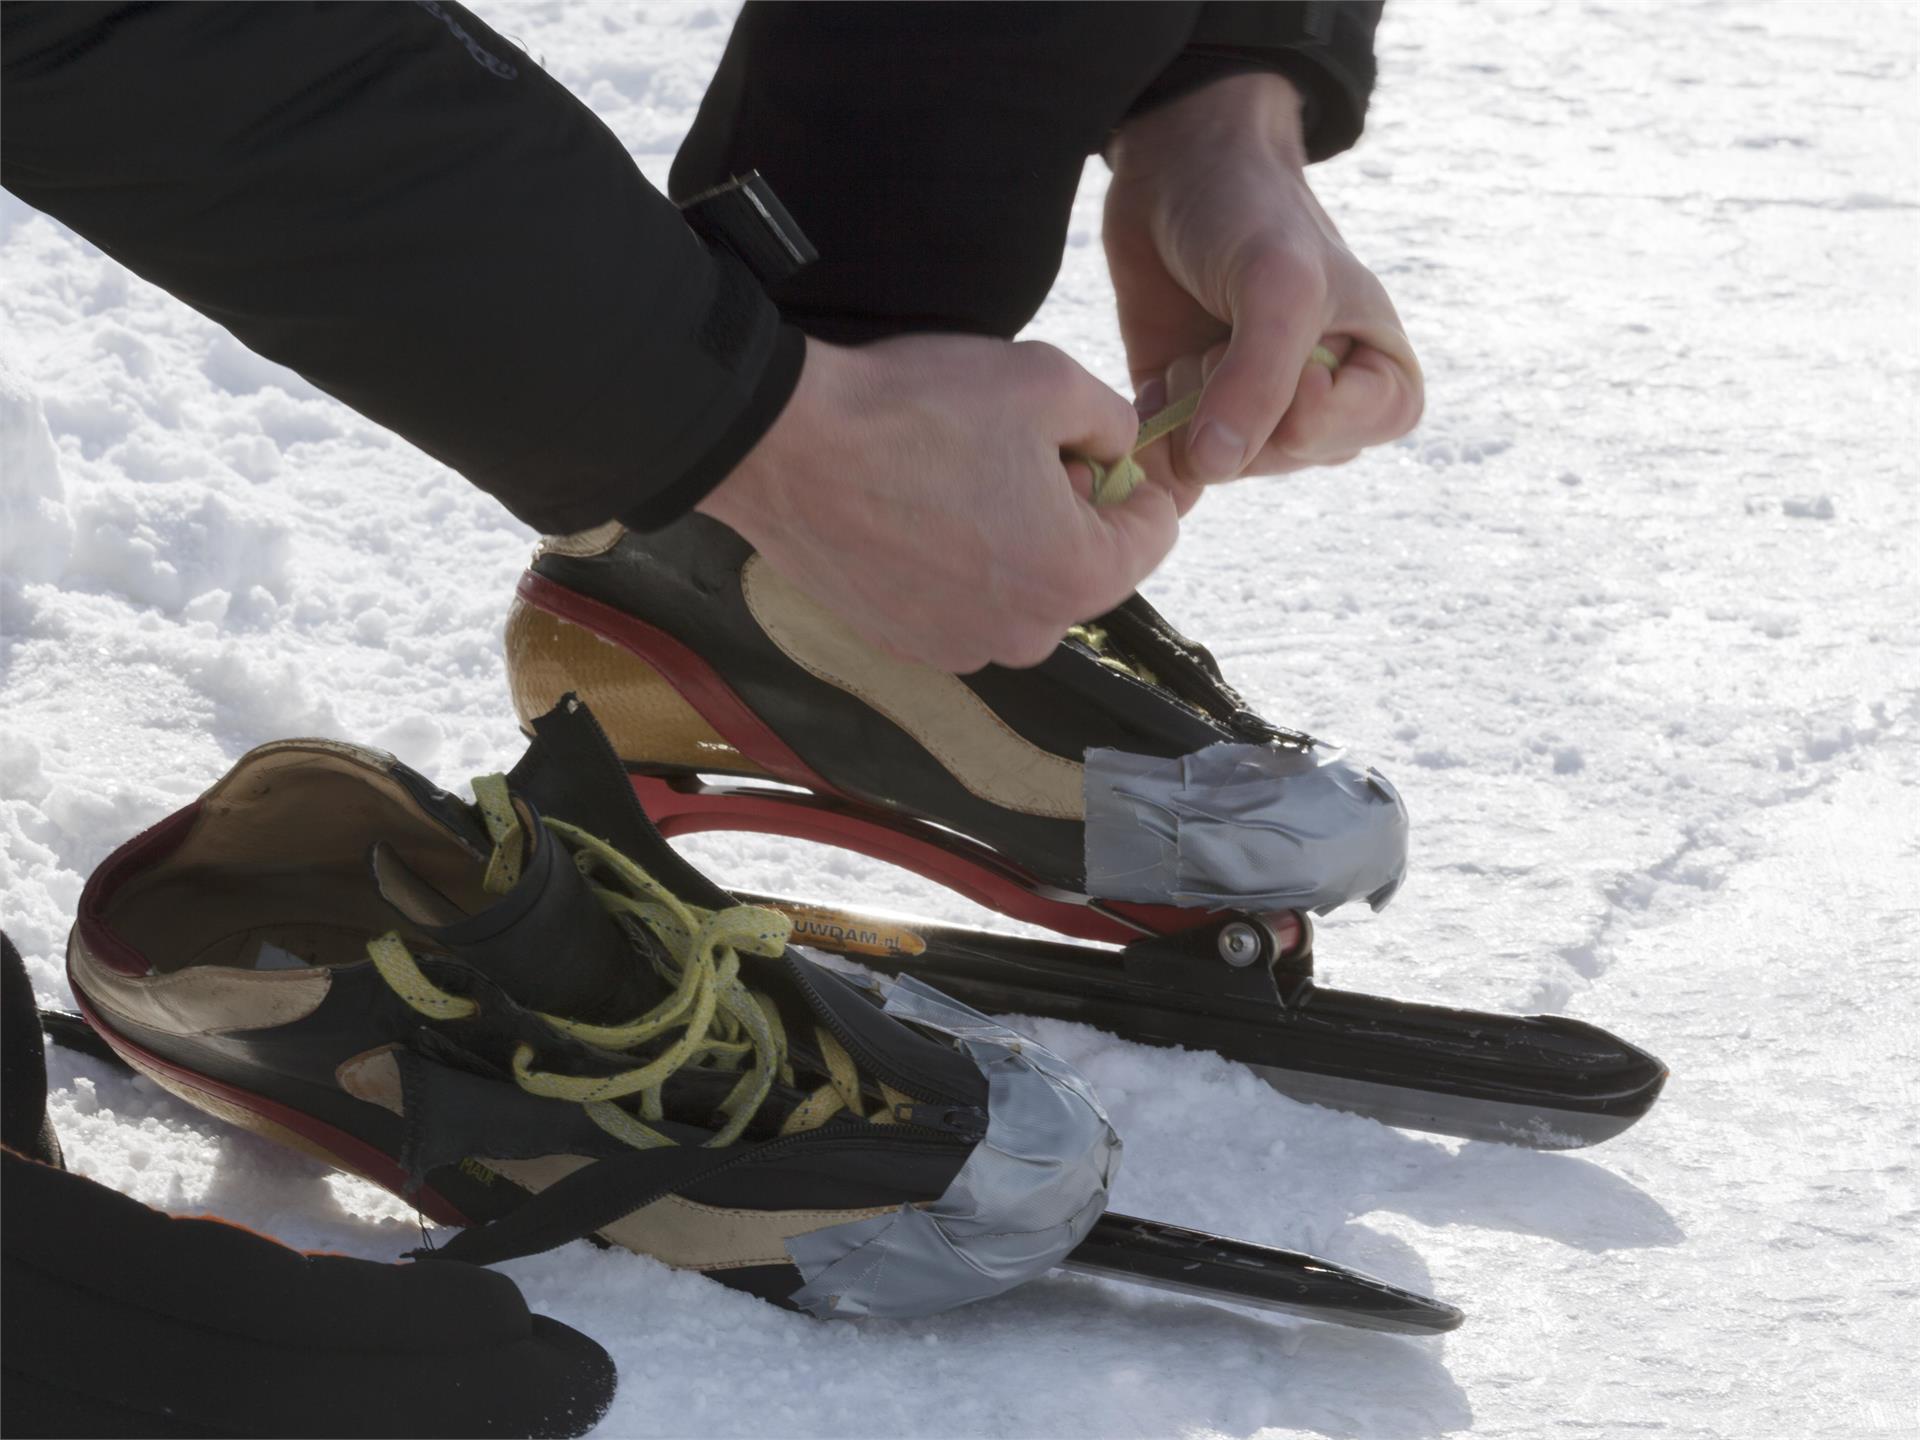 Ice-skating in Sluderno